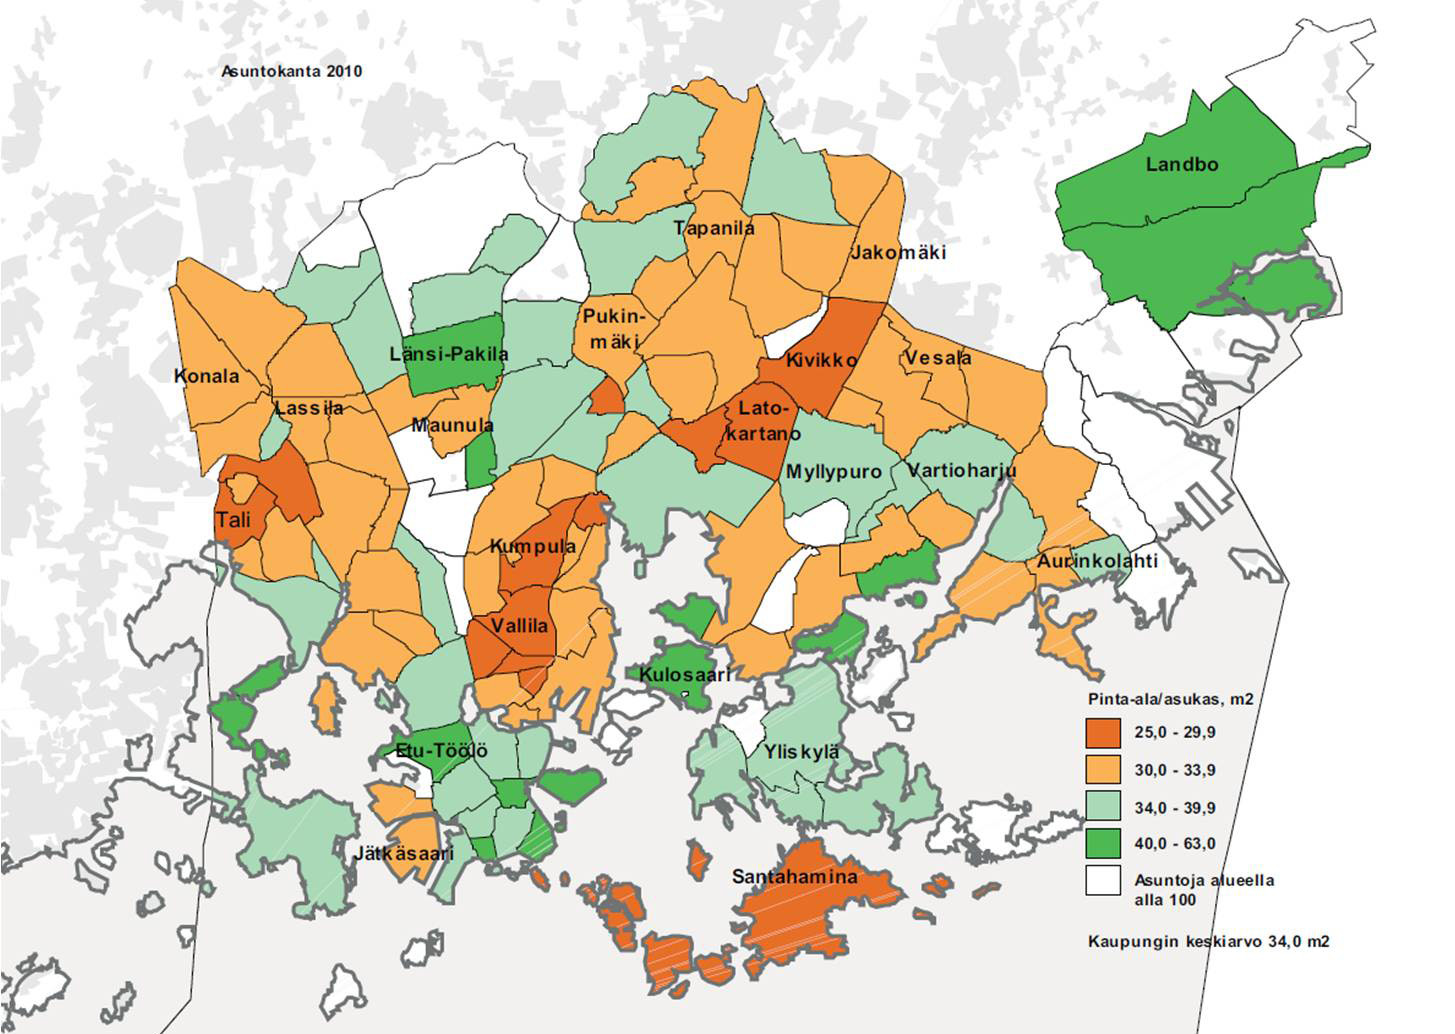 13 Asumisväljyys Helsingissä oli asuntokunnilla käytössään keskimäärin 34,0 asuinneliötä henkilöä kohti vuonna 2010.